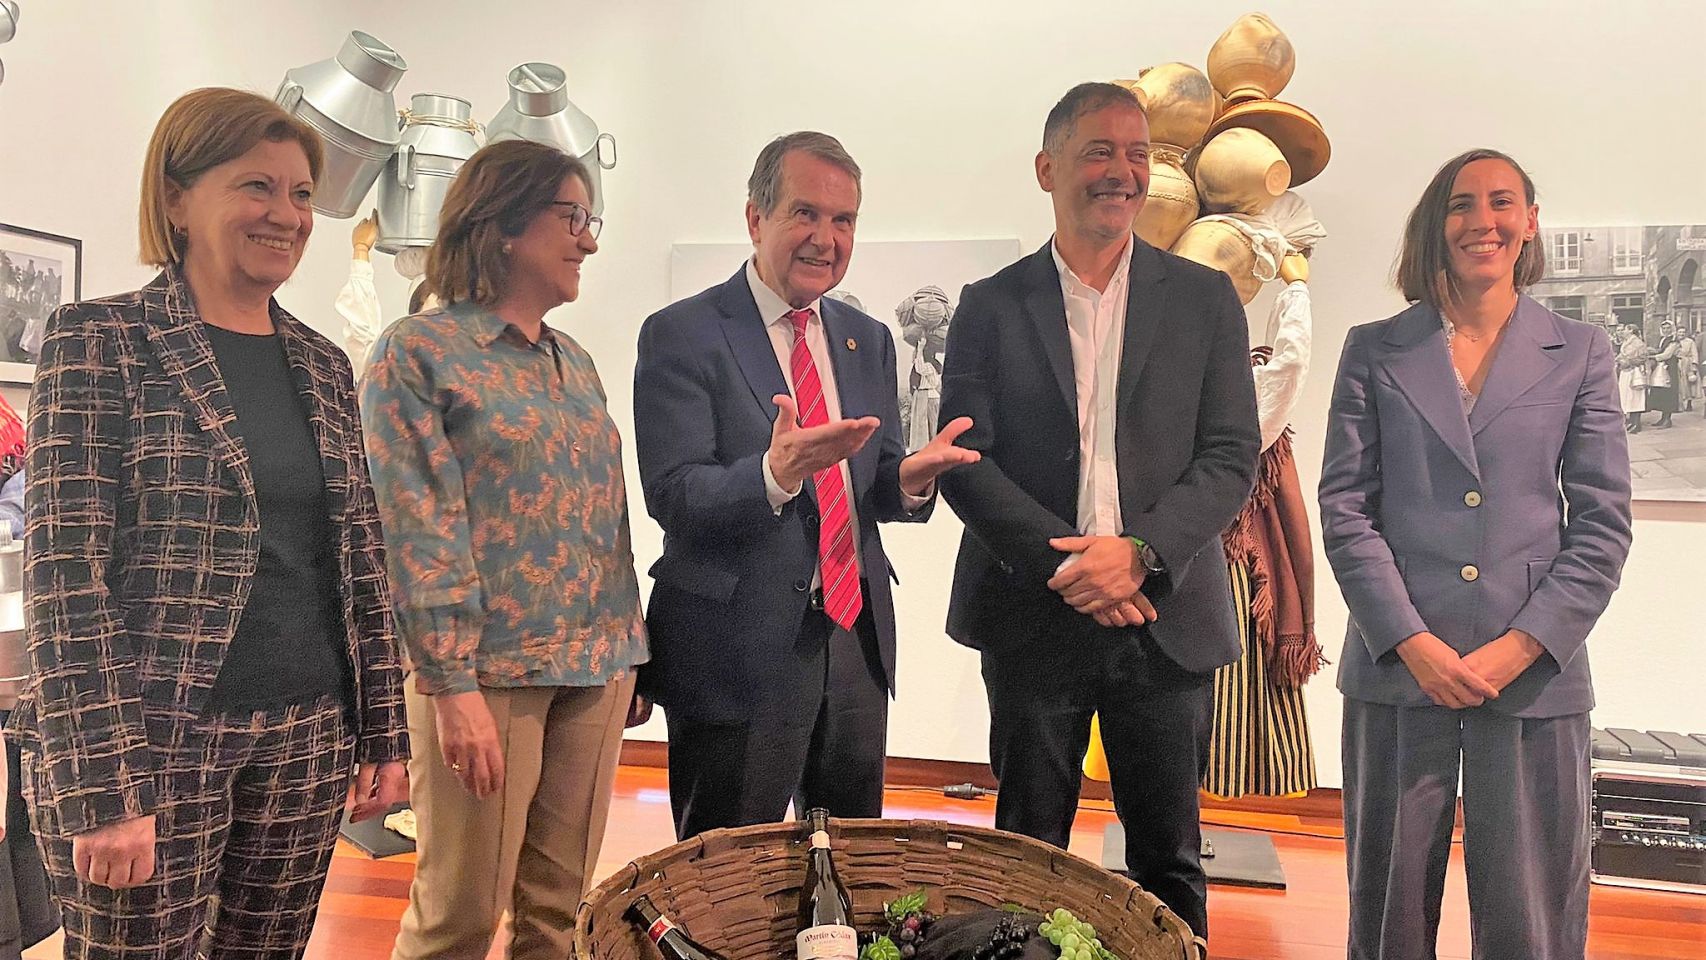 Inauguración de la exposición 'Fragmentos de onte' de Bodegas Martín Códax en Vigo. 